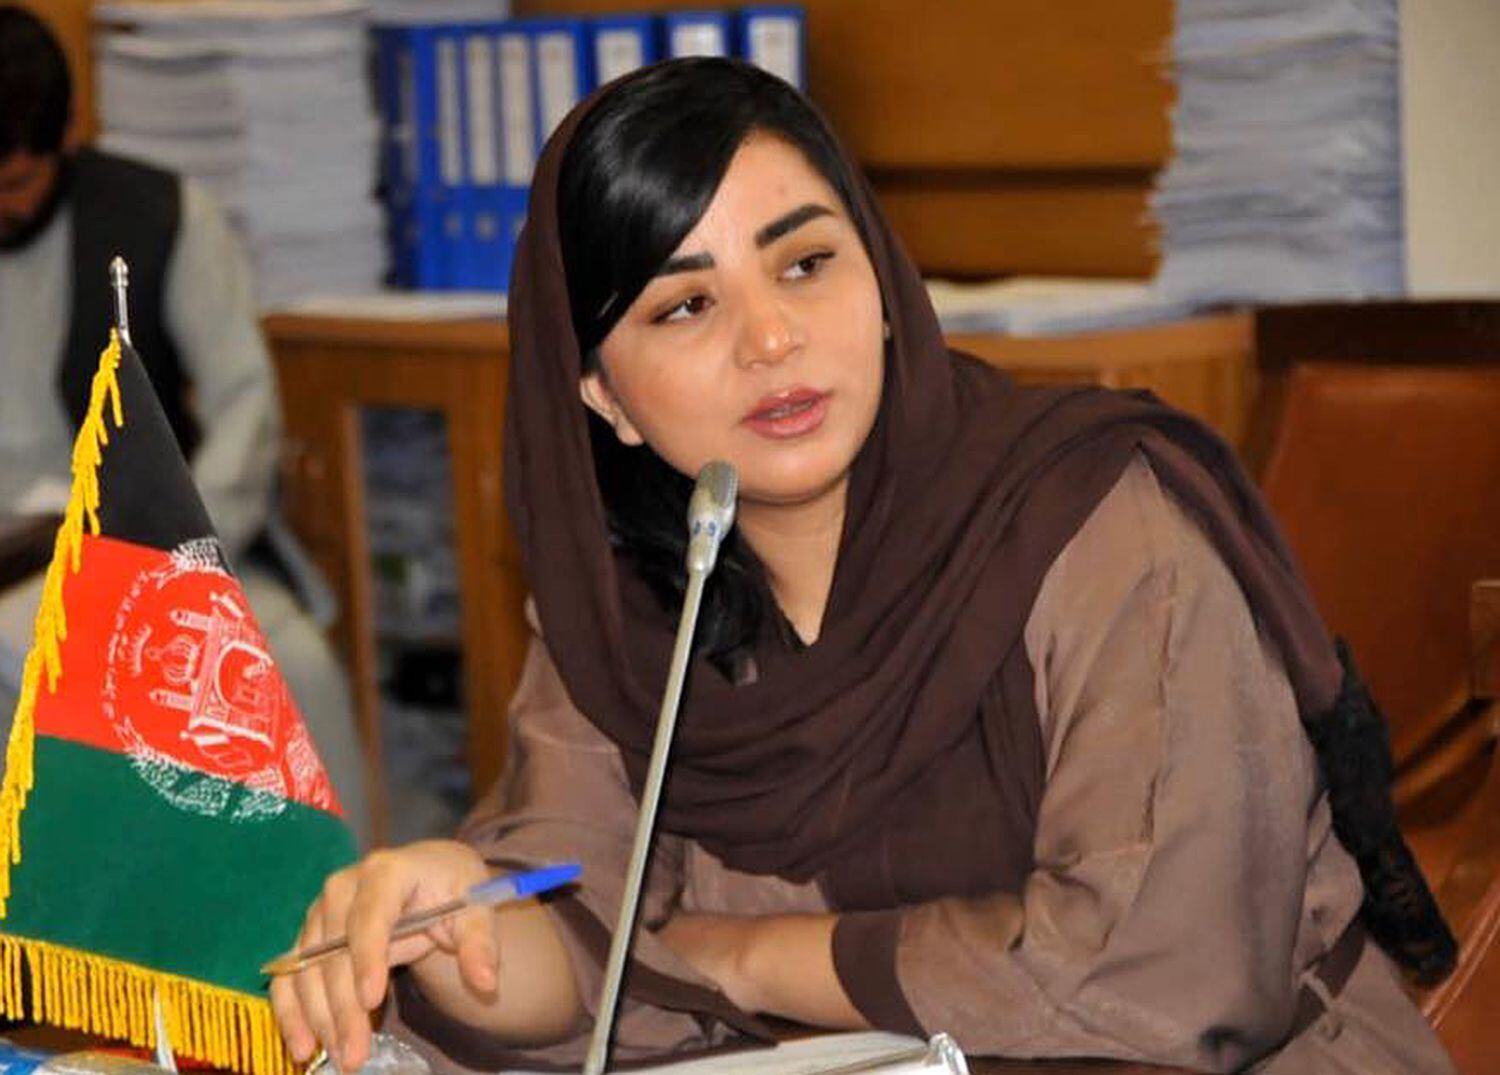 Farzana Kochai, deputada afegã pela circunscrição especial dos nômades kuchi. Foto de seu perfil do Facebook de 2020.